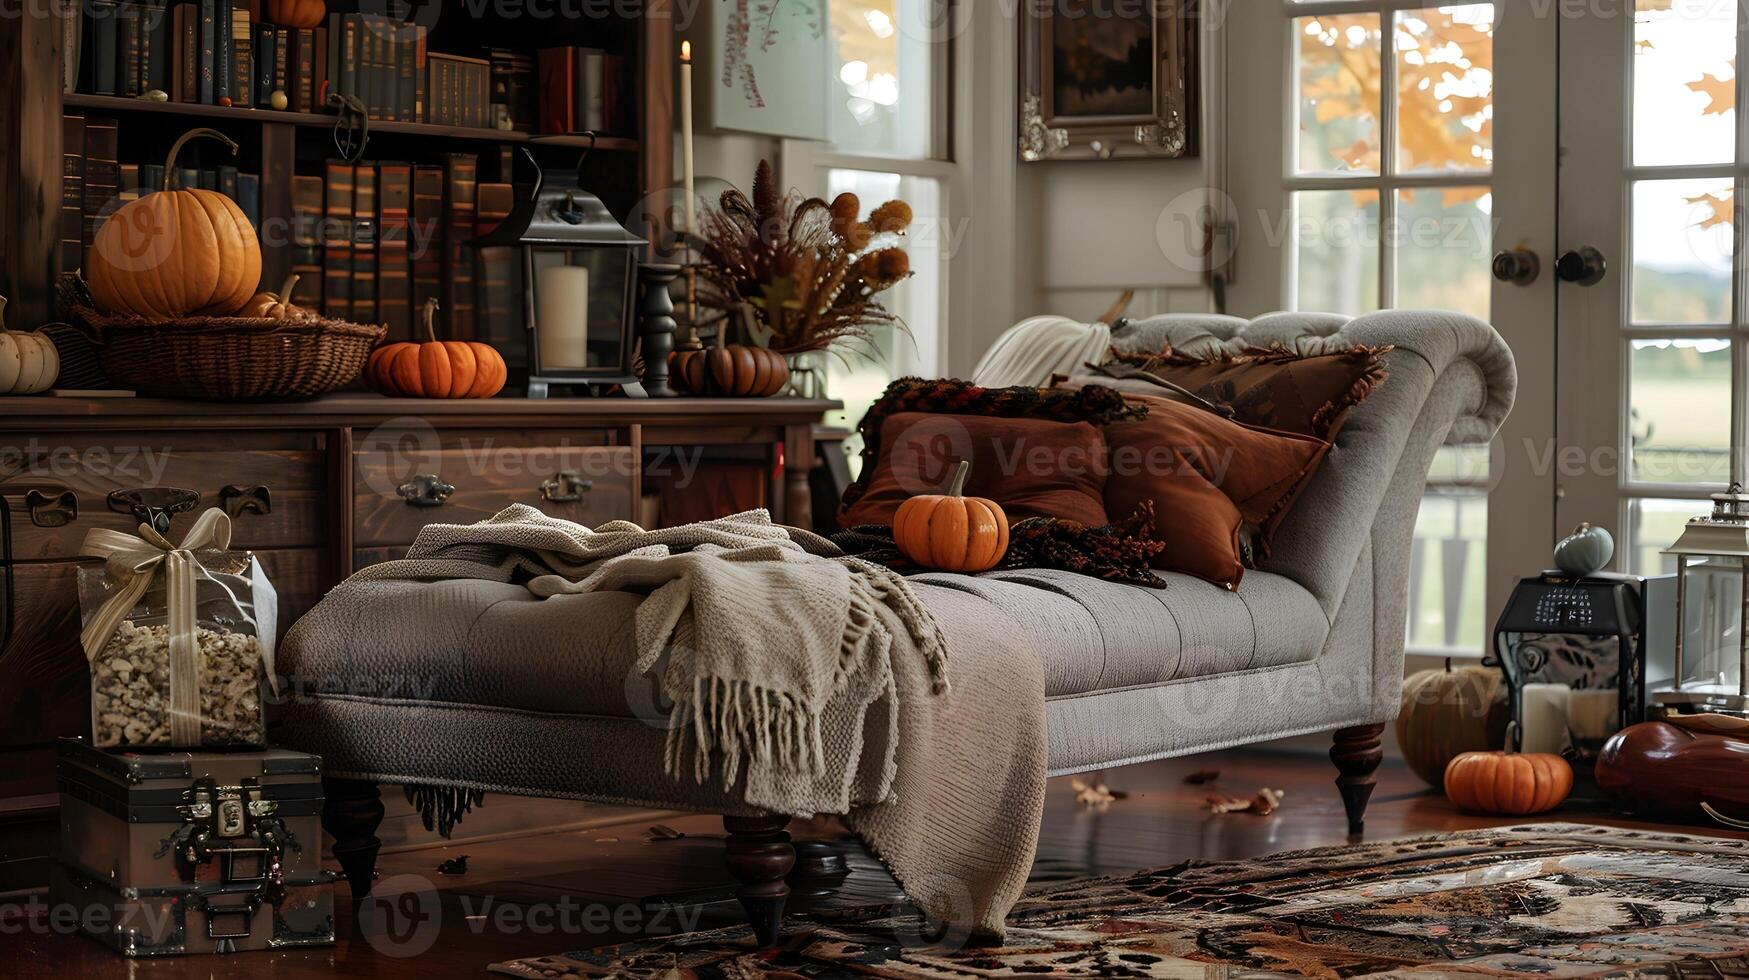 outono vivo quarto fuga uma acolhedor chaise salão adornado com decorativo abóboras e caloroso tons para uma tranquilo lendo experiência foto